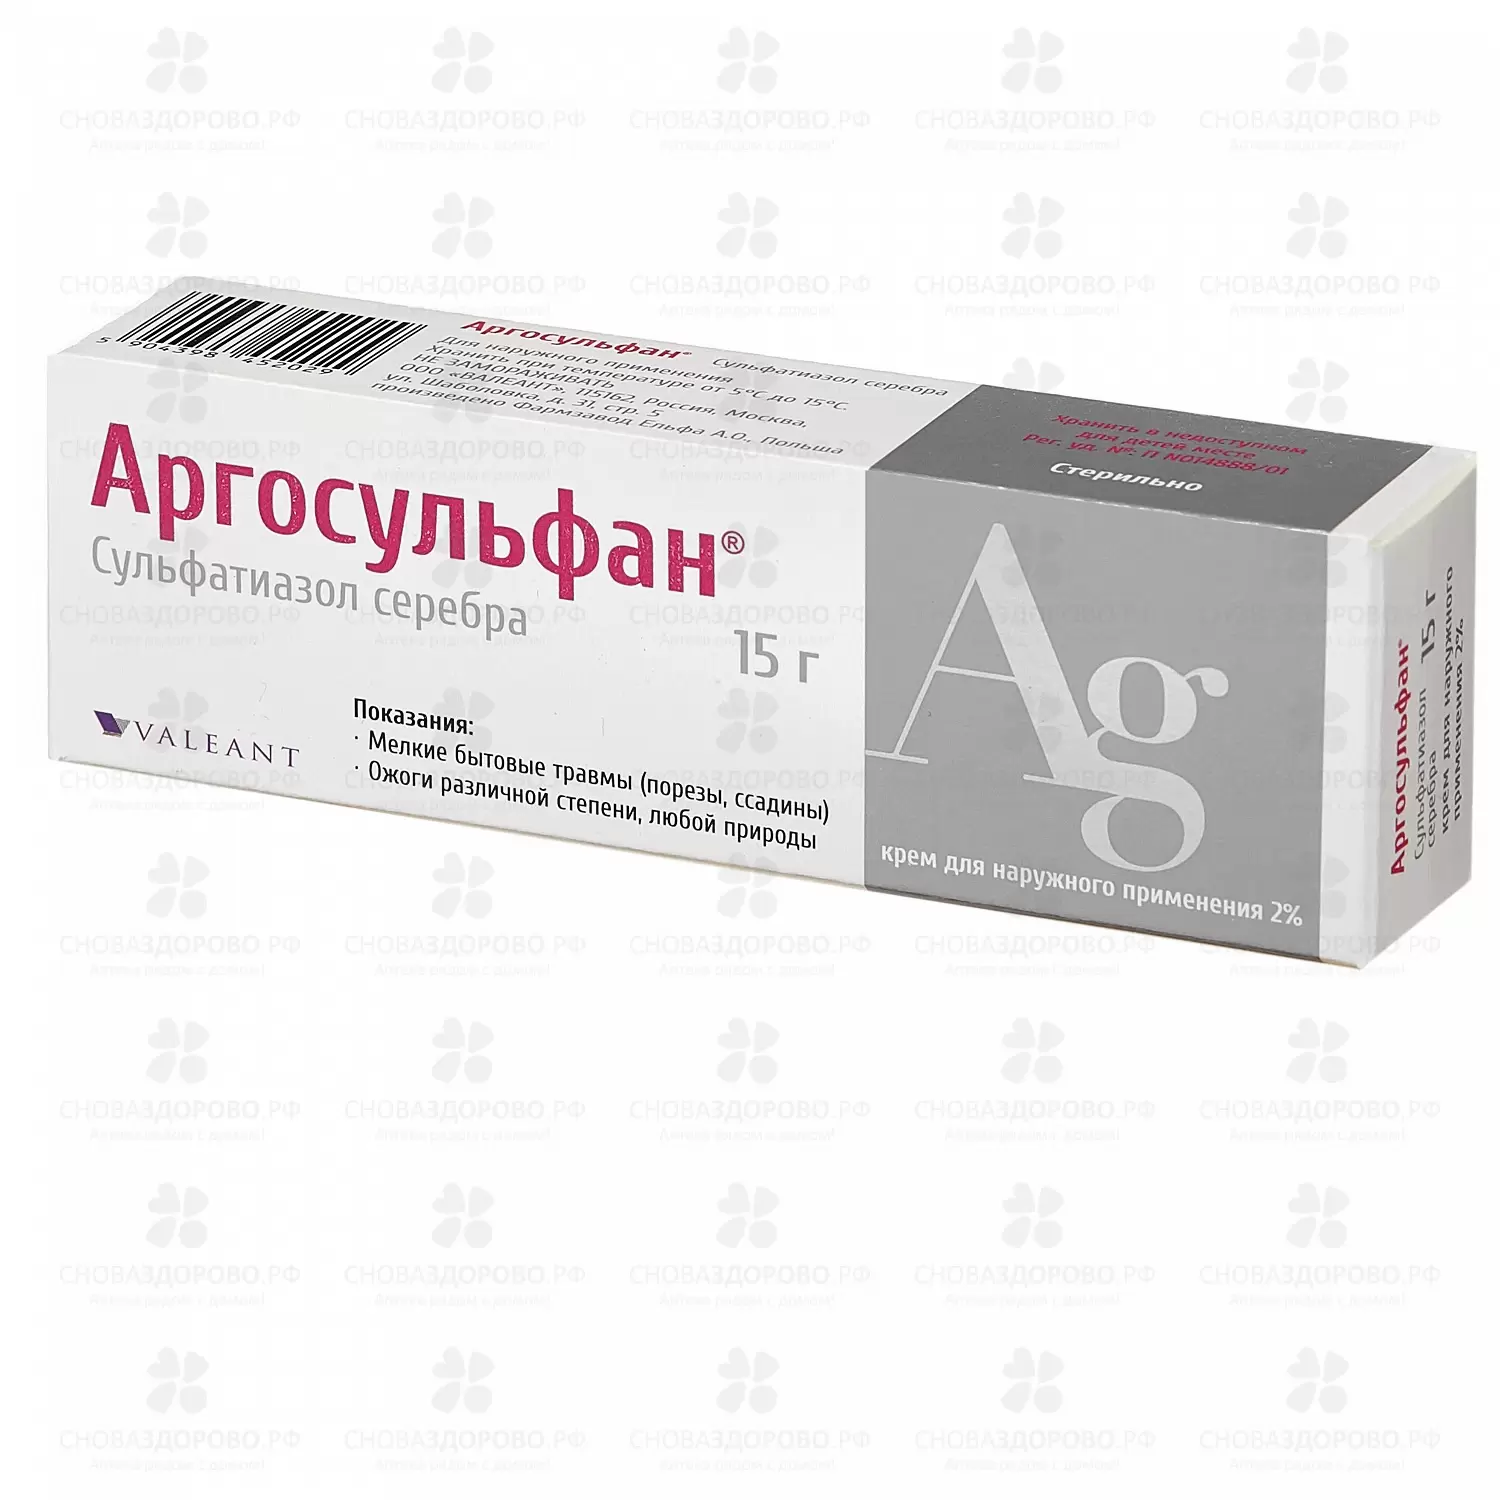 Аргосульфан крем для наружного применения 2% 15г ✅ 09647/06112 | Сноваздорово.рф